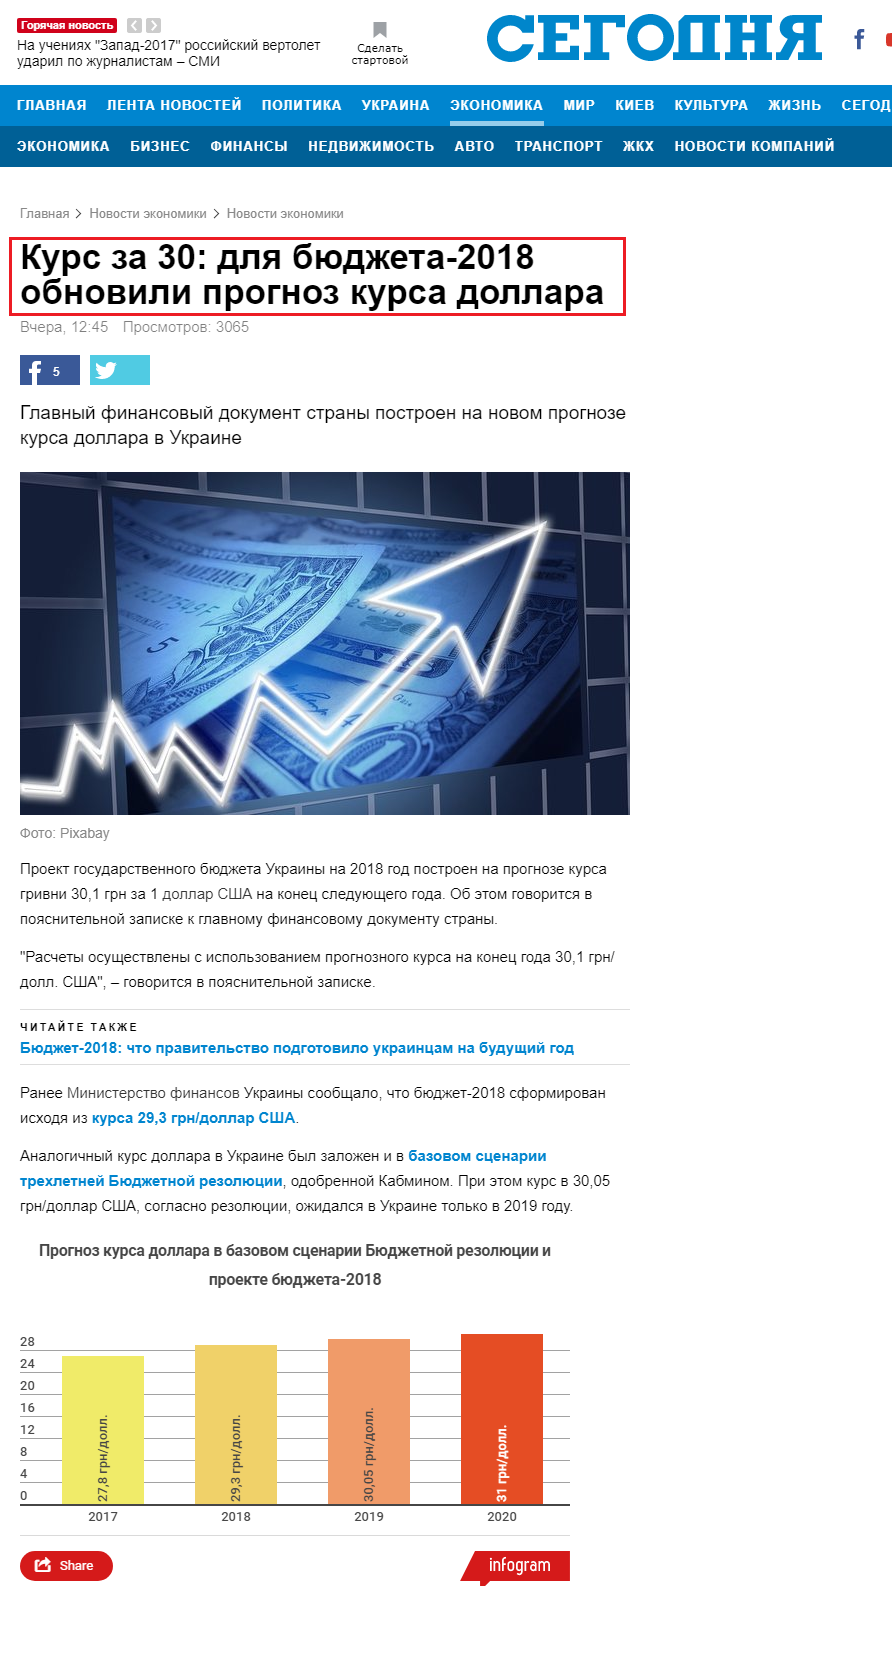 http://www.segodnya.ua/economics/enews/kurs-za-30-dlya-byudzheta-2018-obnovili-prognoz-kursa-dollara-1056650.html